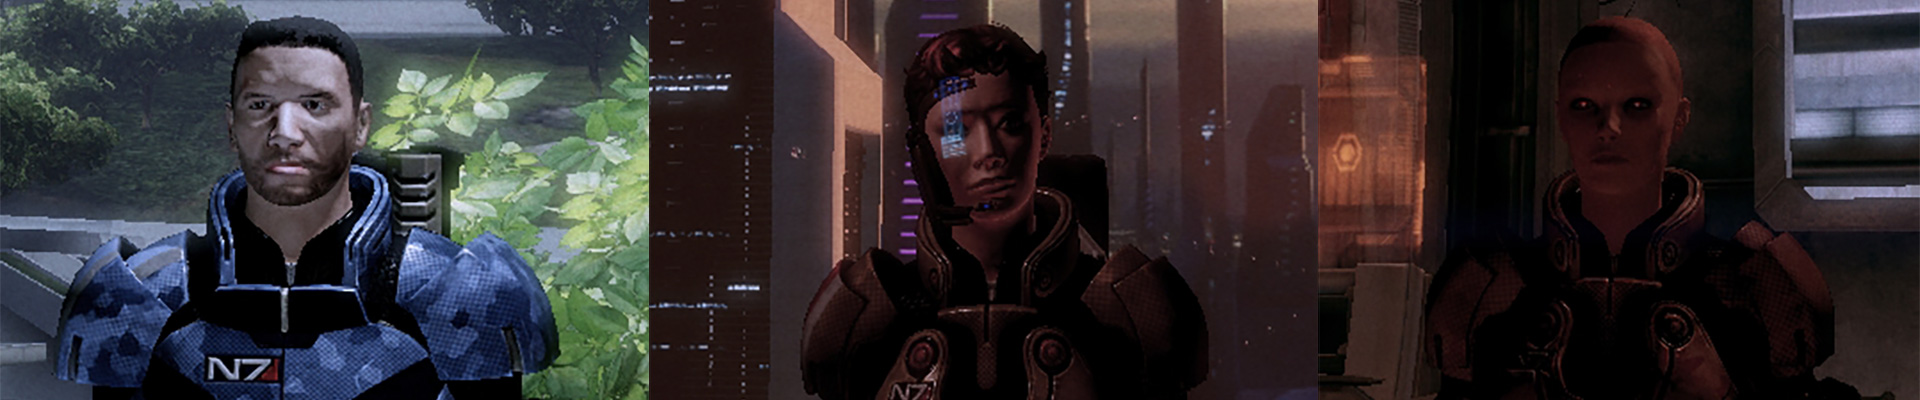 Mass Effect 2. Одиннадцать друзей Шепарда